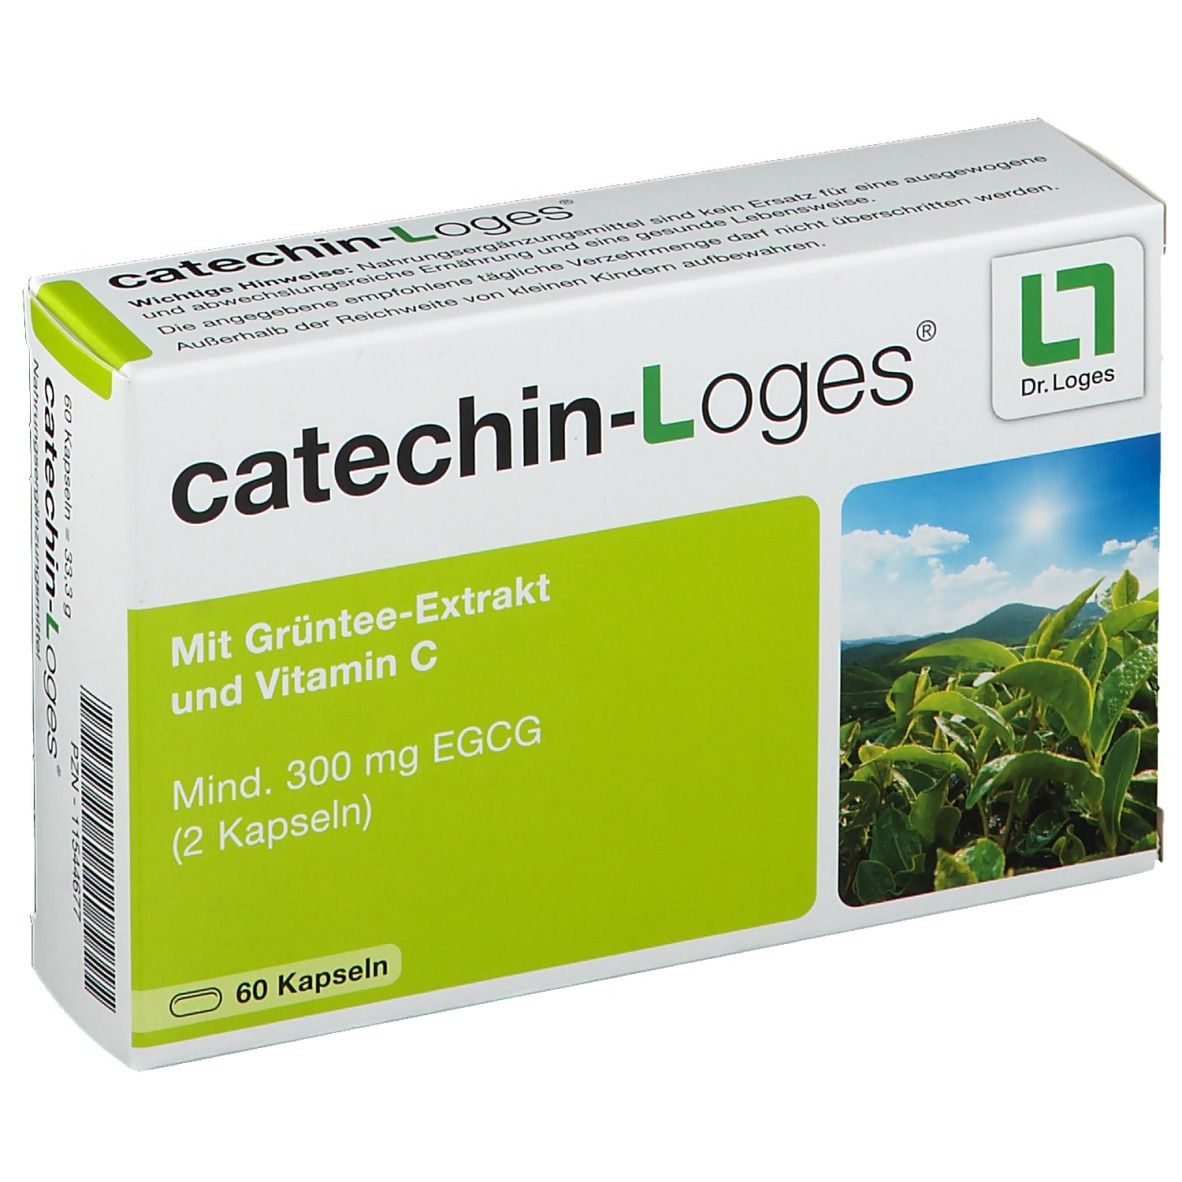 catechin-Loges® Grüntee Kapseln